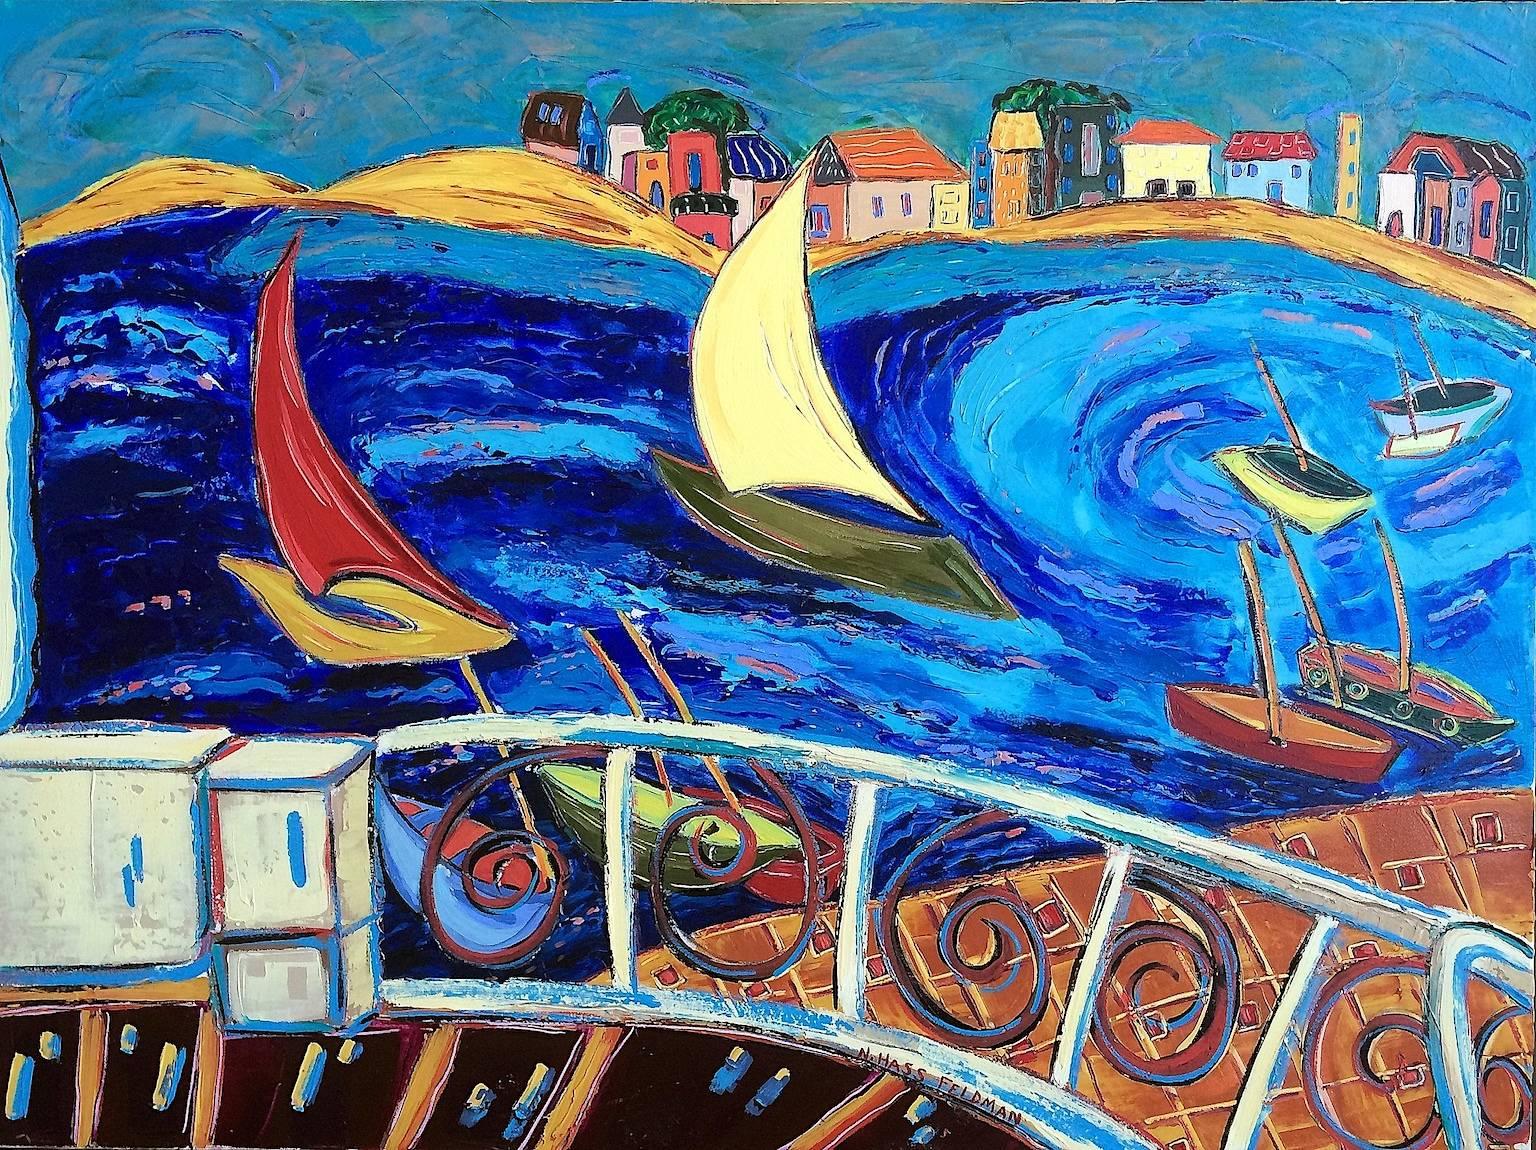 "Terrasse au-dessus du port", contemporaine, voiliers, bleus, peinture acrylique. - Painting de Nan Hass Feldman